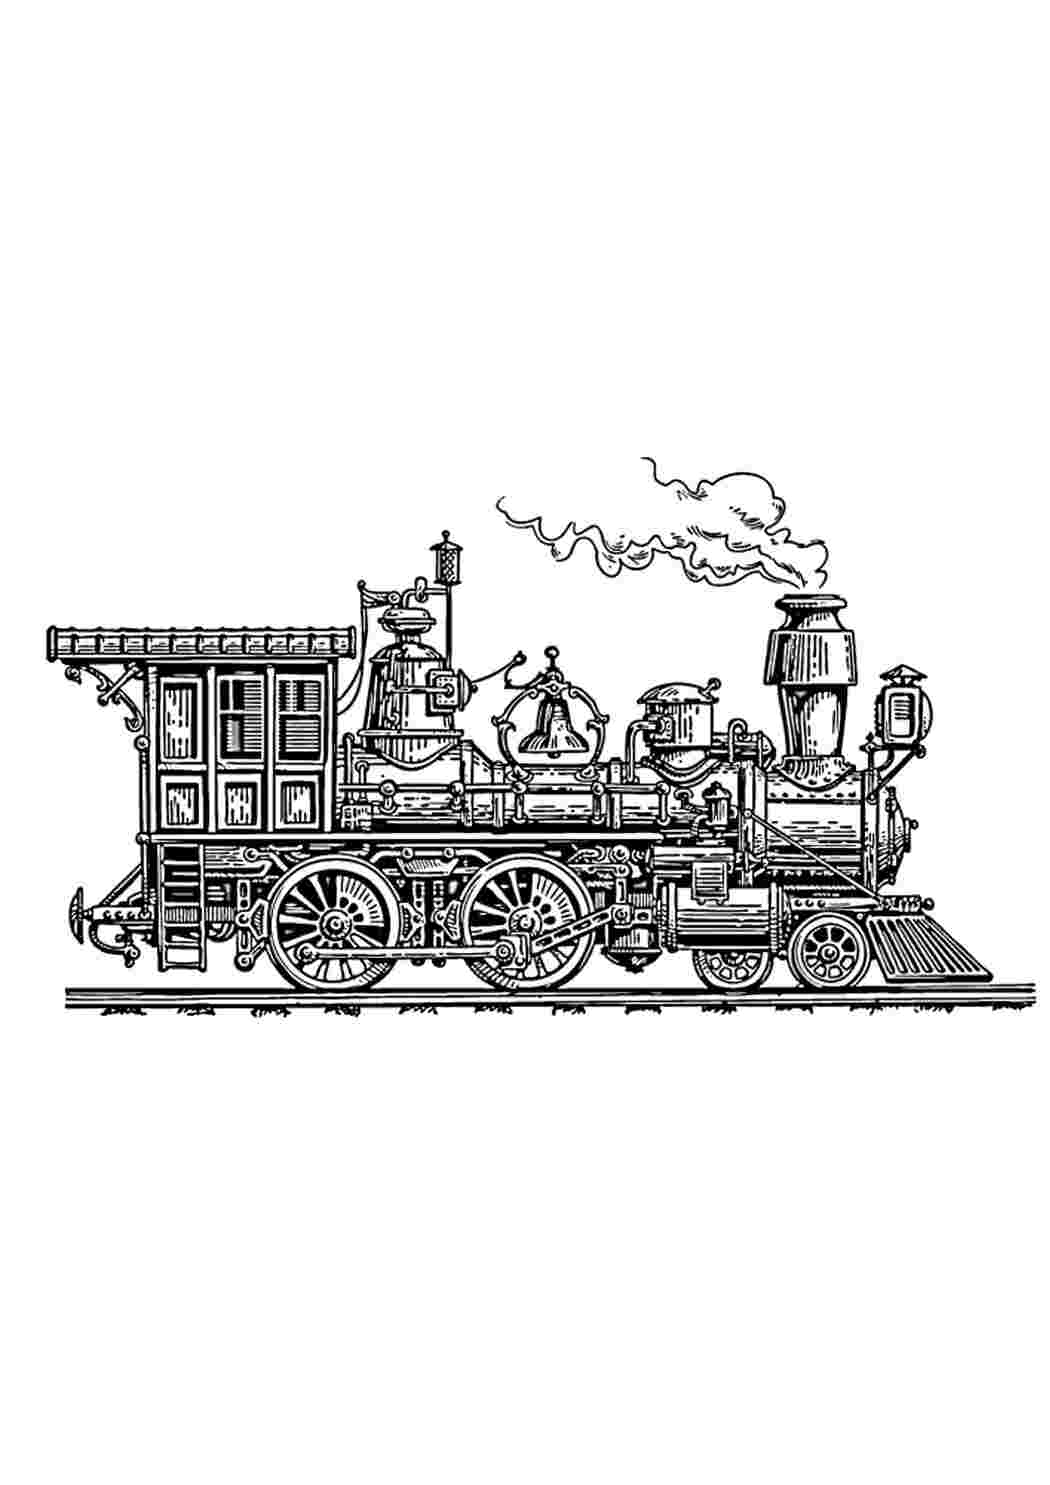 100 000 изображений по запросу Поезд дети рисунок доступны в рамках роялти-фри лицензии